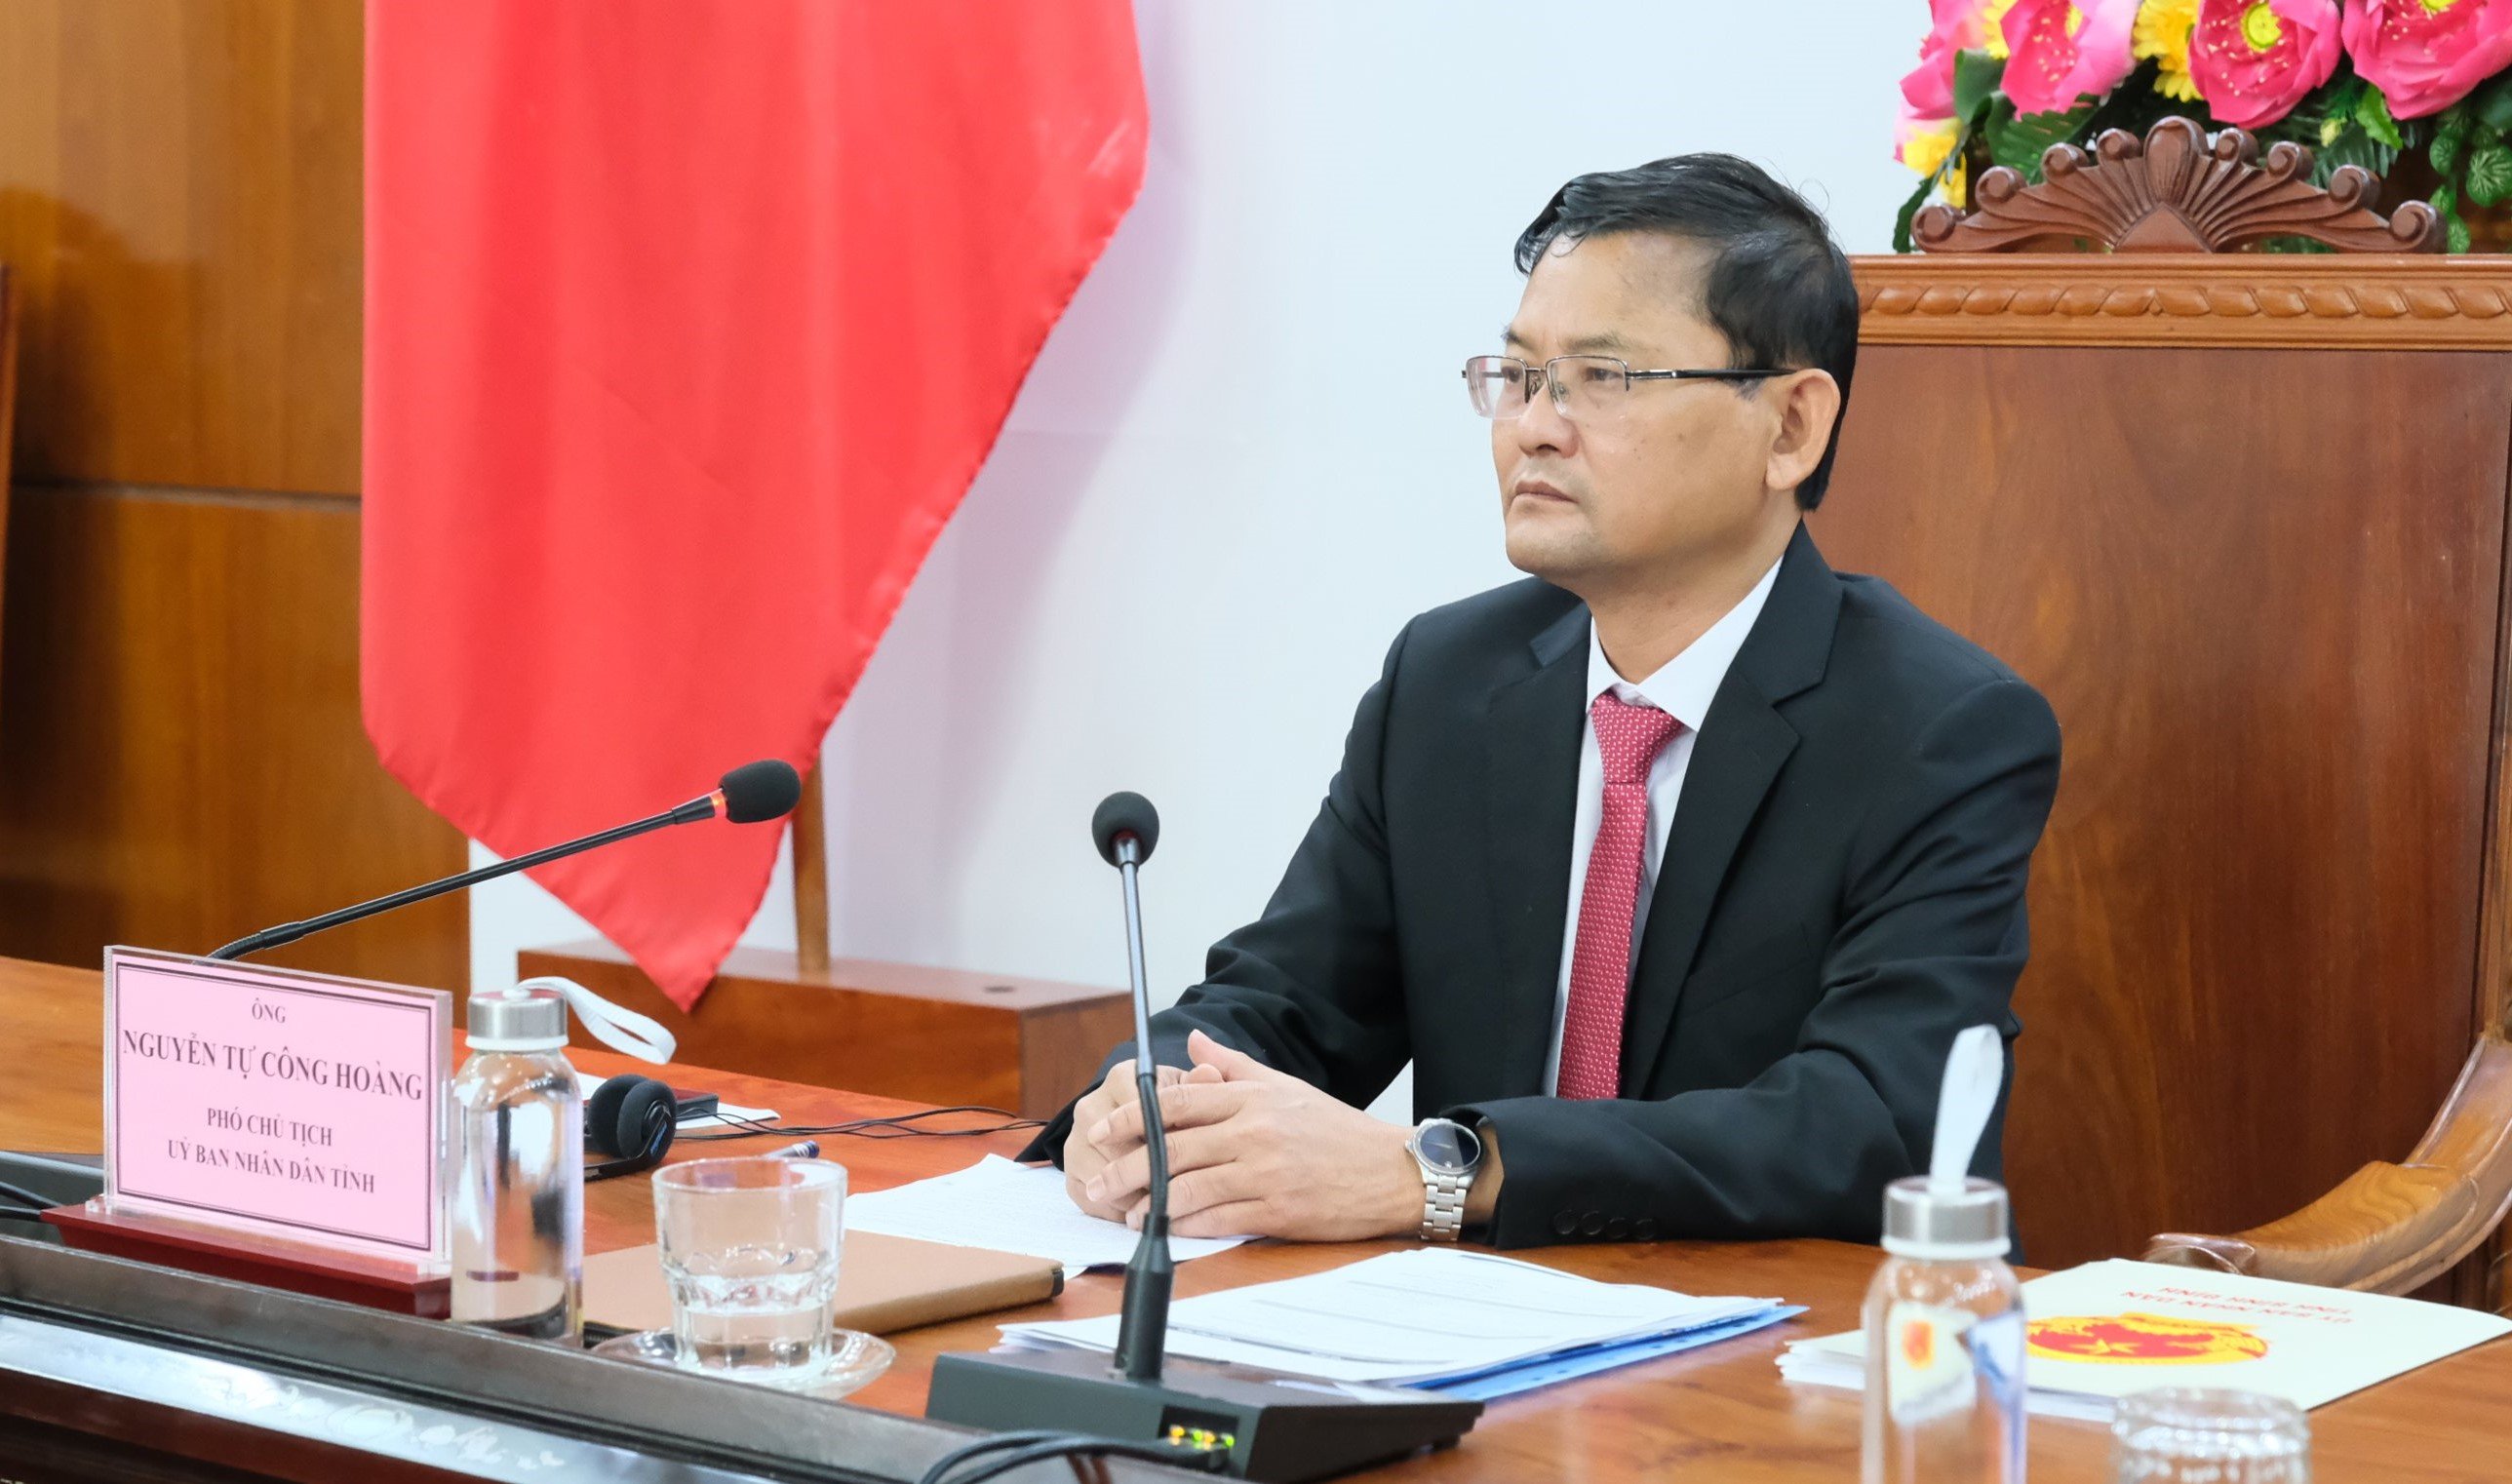 Đồng chí Nguyễn Tự Công Hoàng – Phó Chủ tịch UBND tỉnh Bình Định phát biểu khai mạc hội nghị